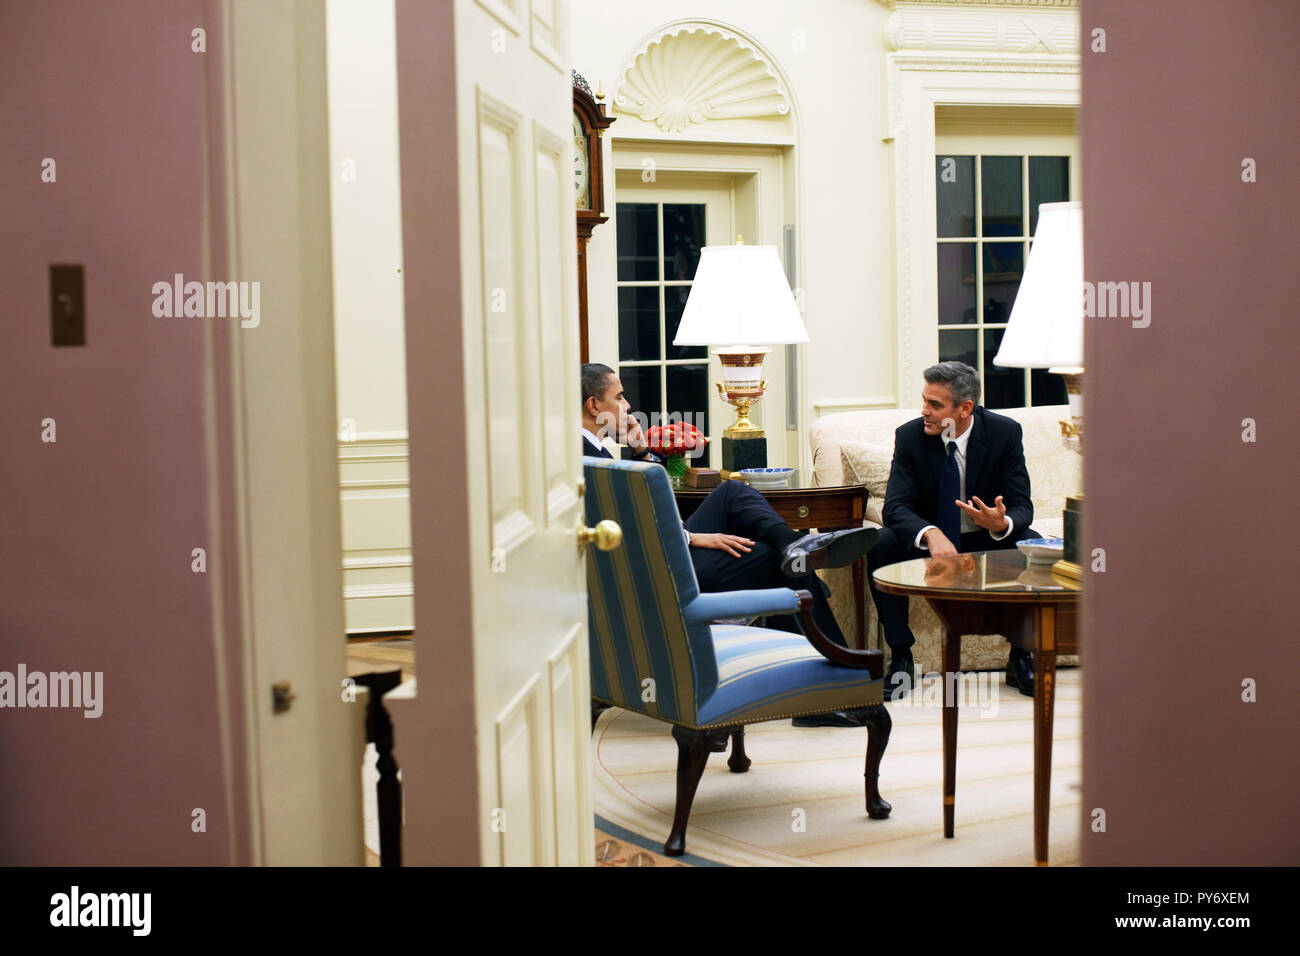 Le président Barack Obama rencontre avec l'acteur George Clooney dans le bureau ovale 2/23/09. Photo Officiel de la Maison Blanche par Pete Souza Banque D'Images